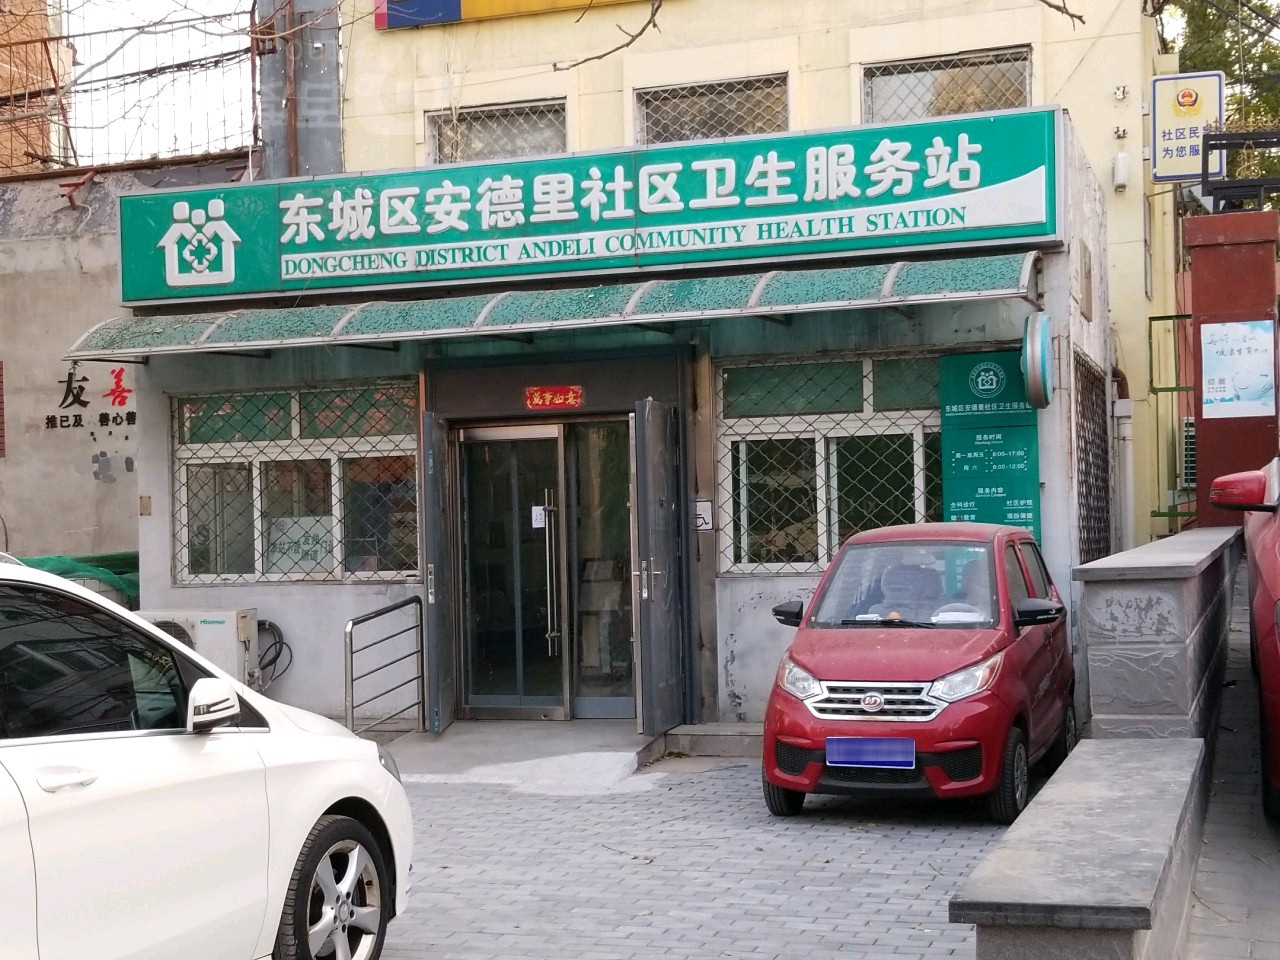 北京市东城区和平里街道安德里社区卫生服务站地址,电话,简介(北京)